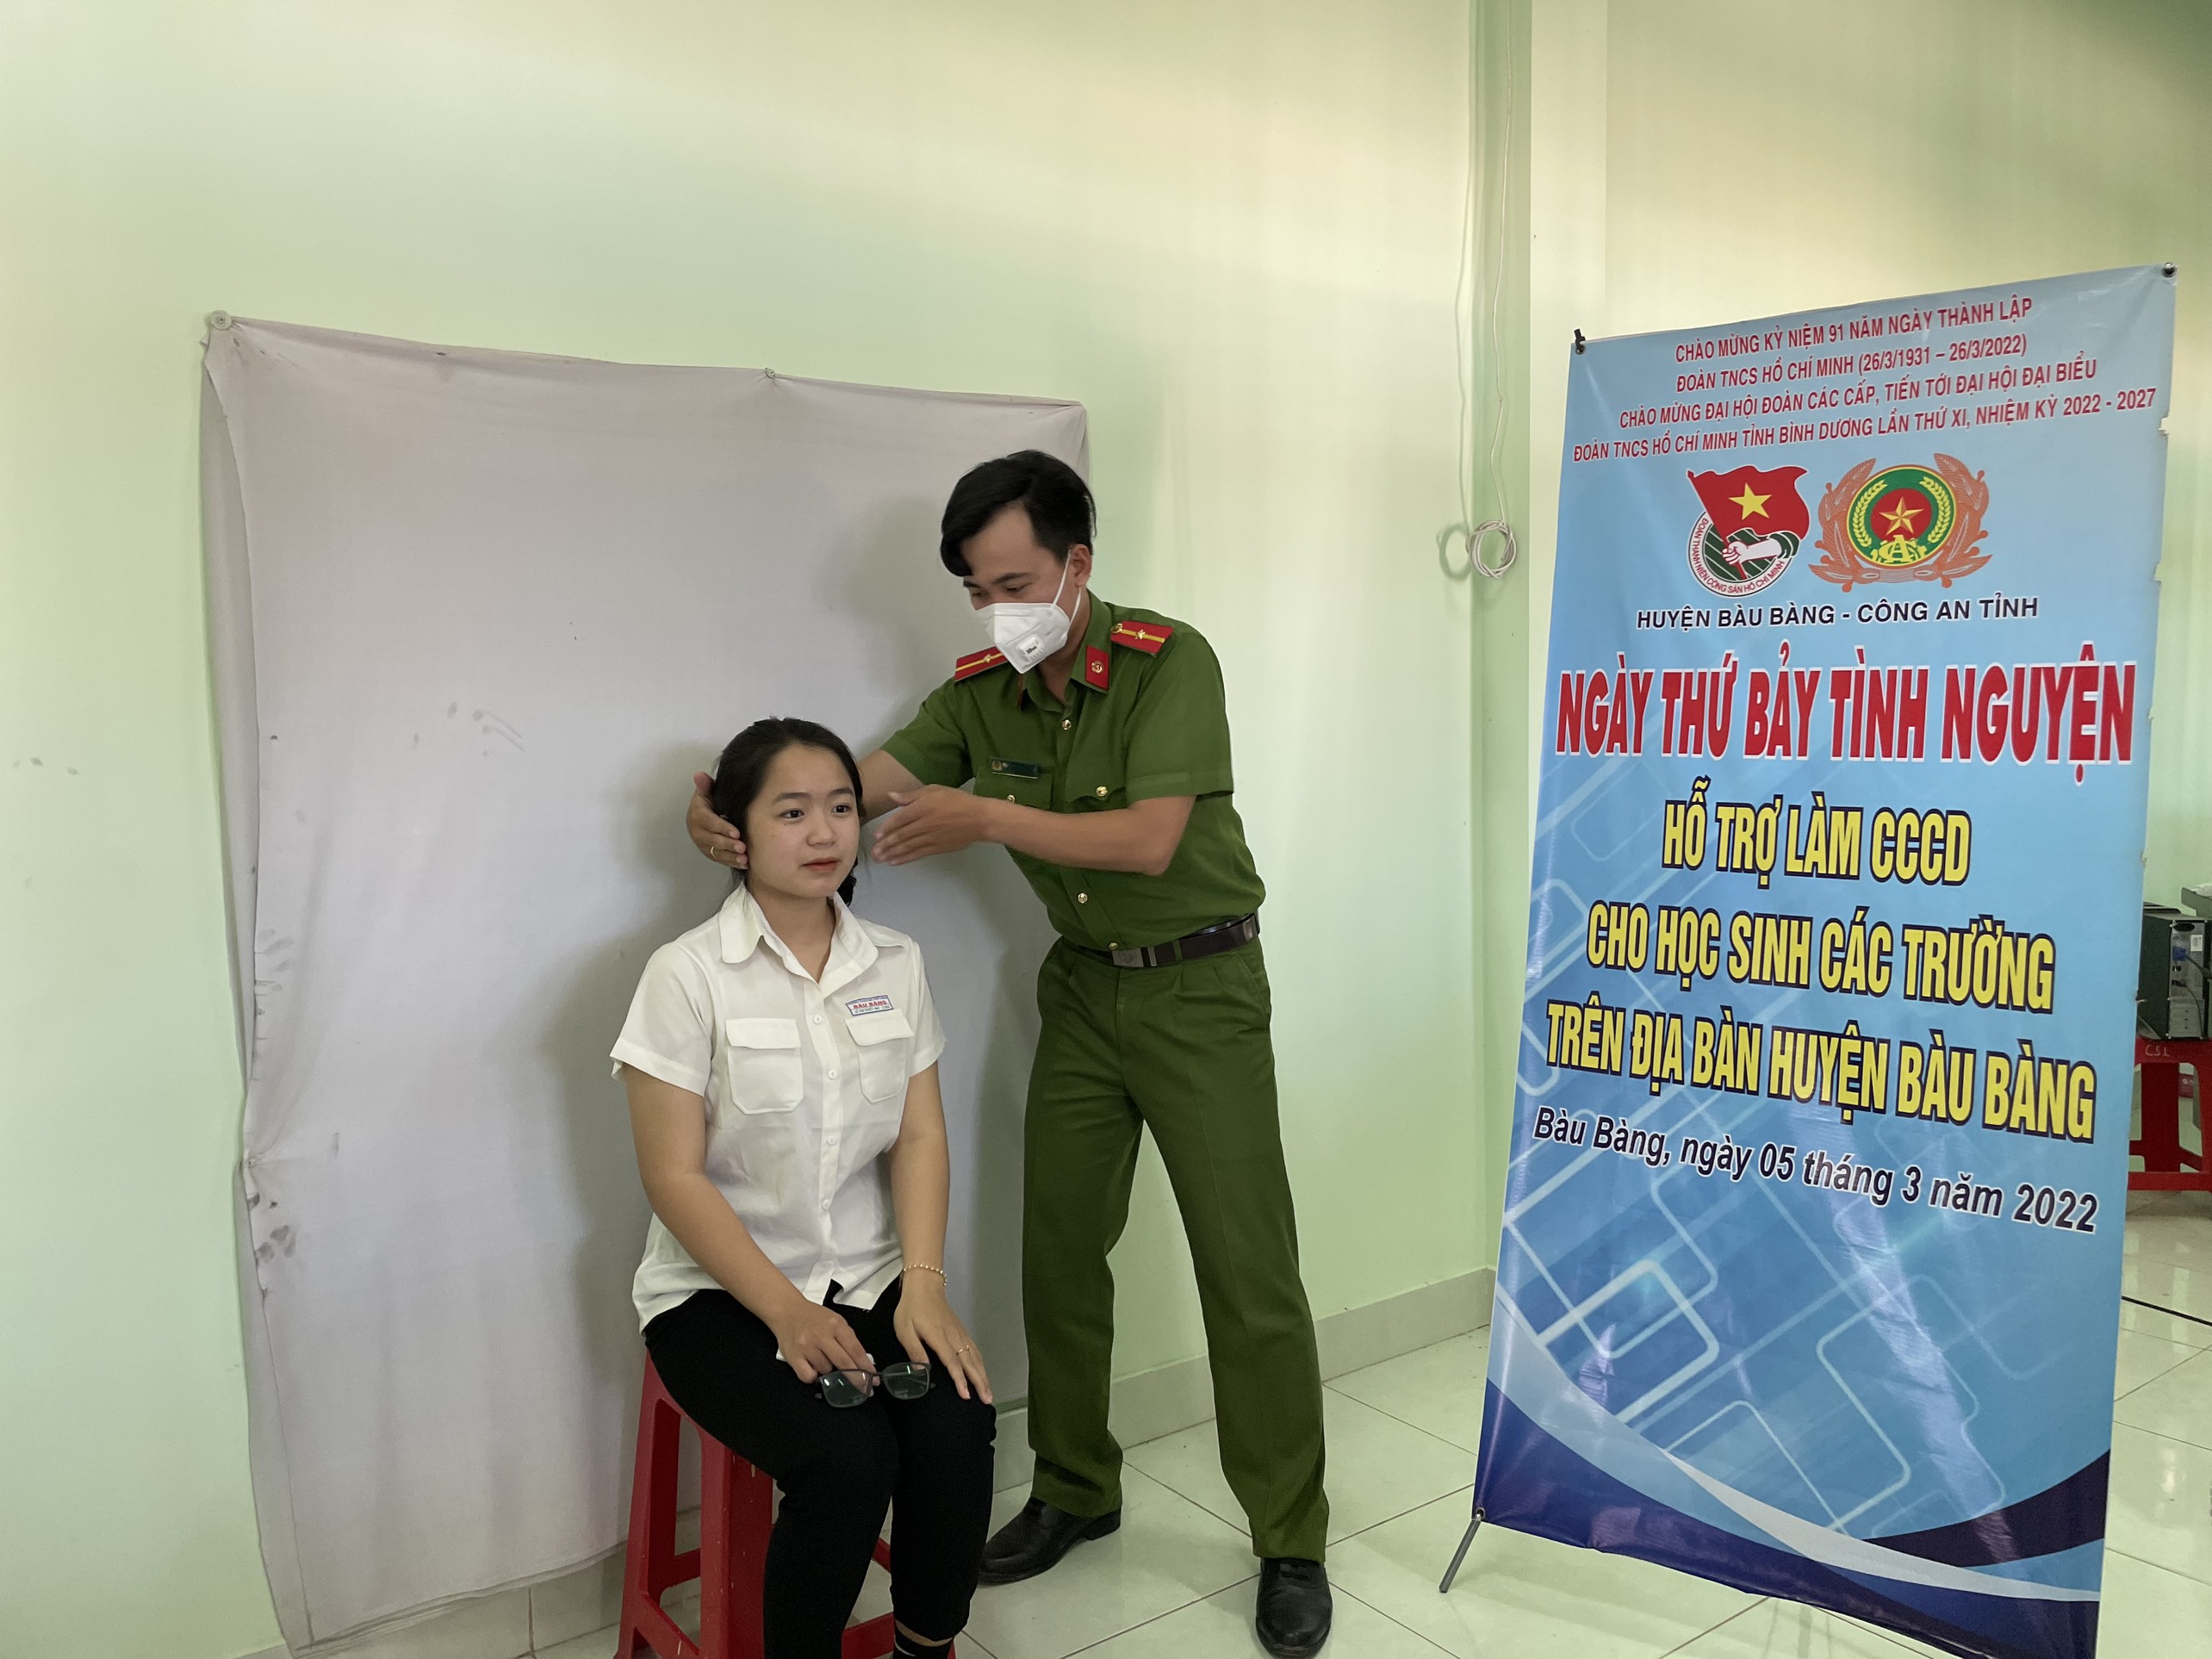 Ngày thứ bảy tình nguyện - Hỗ trợ làm căn cước công dân cho học sinh các trường trên địa bàn huyện Bàu Bàng